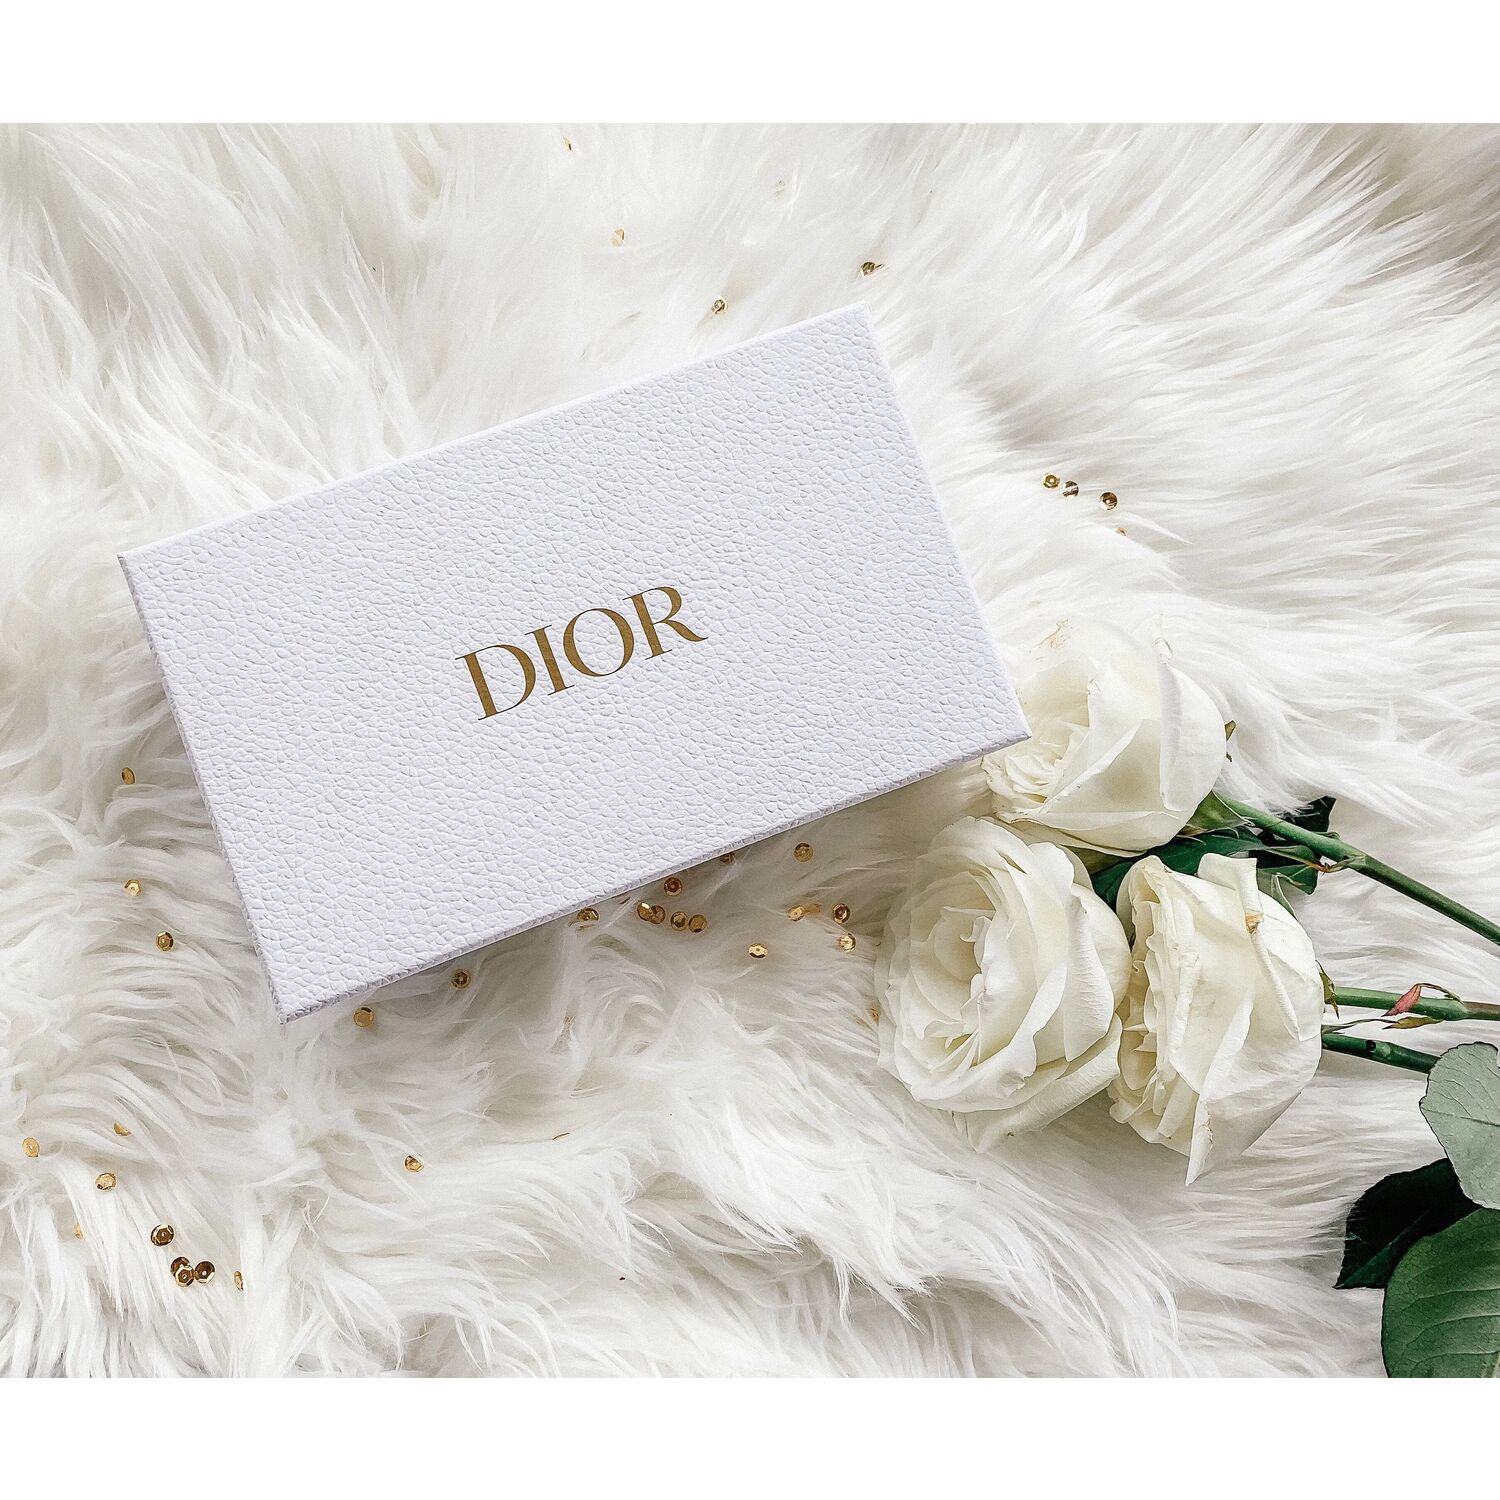 Mode et Design - Christian Dior